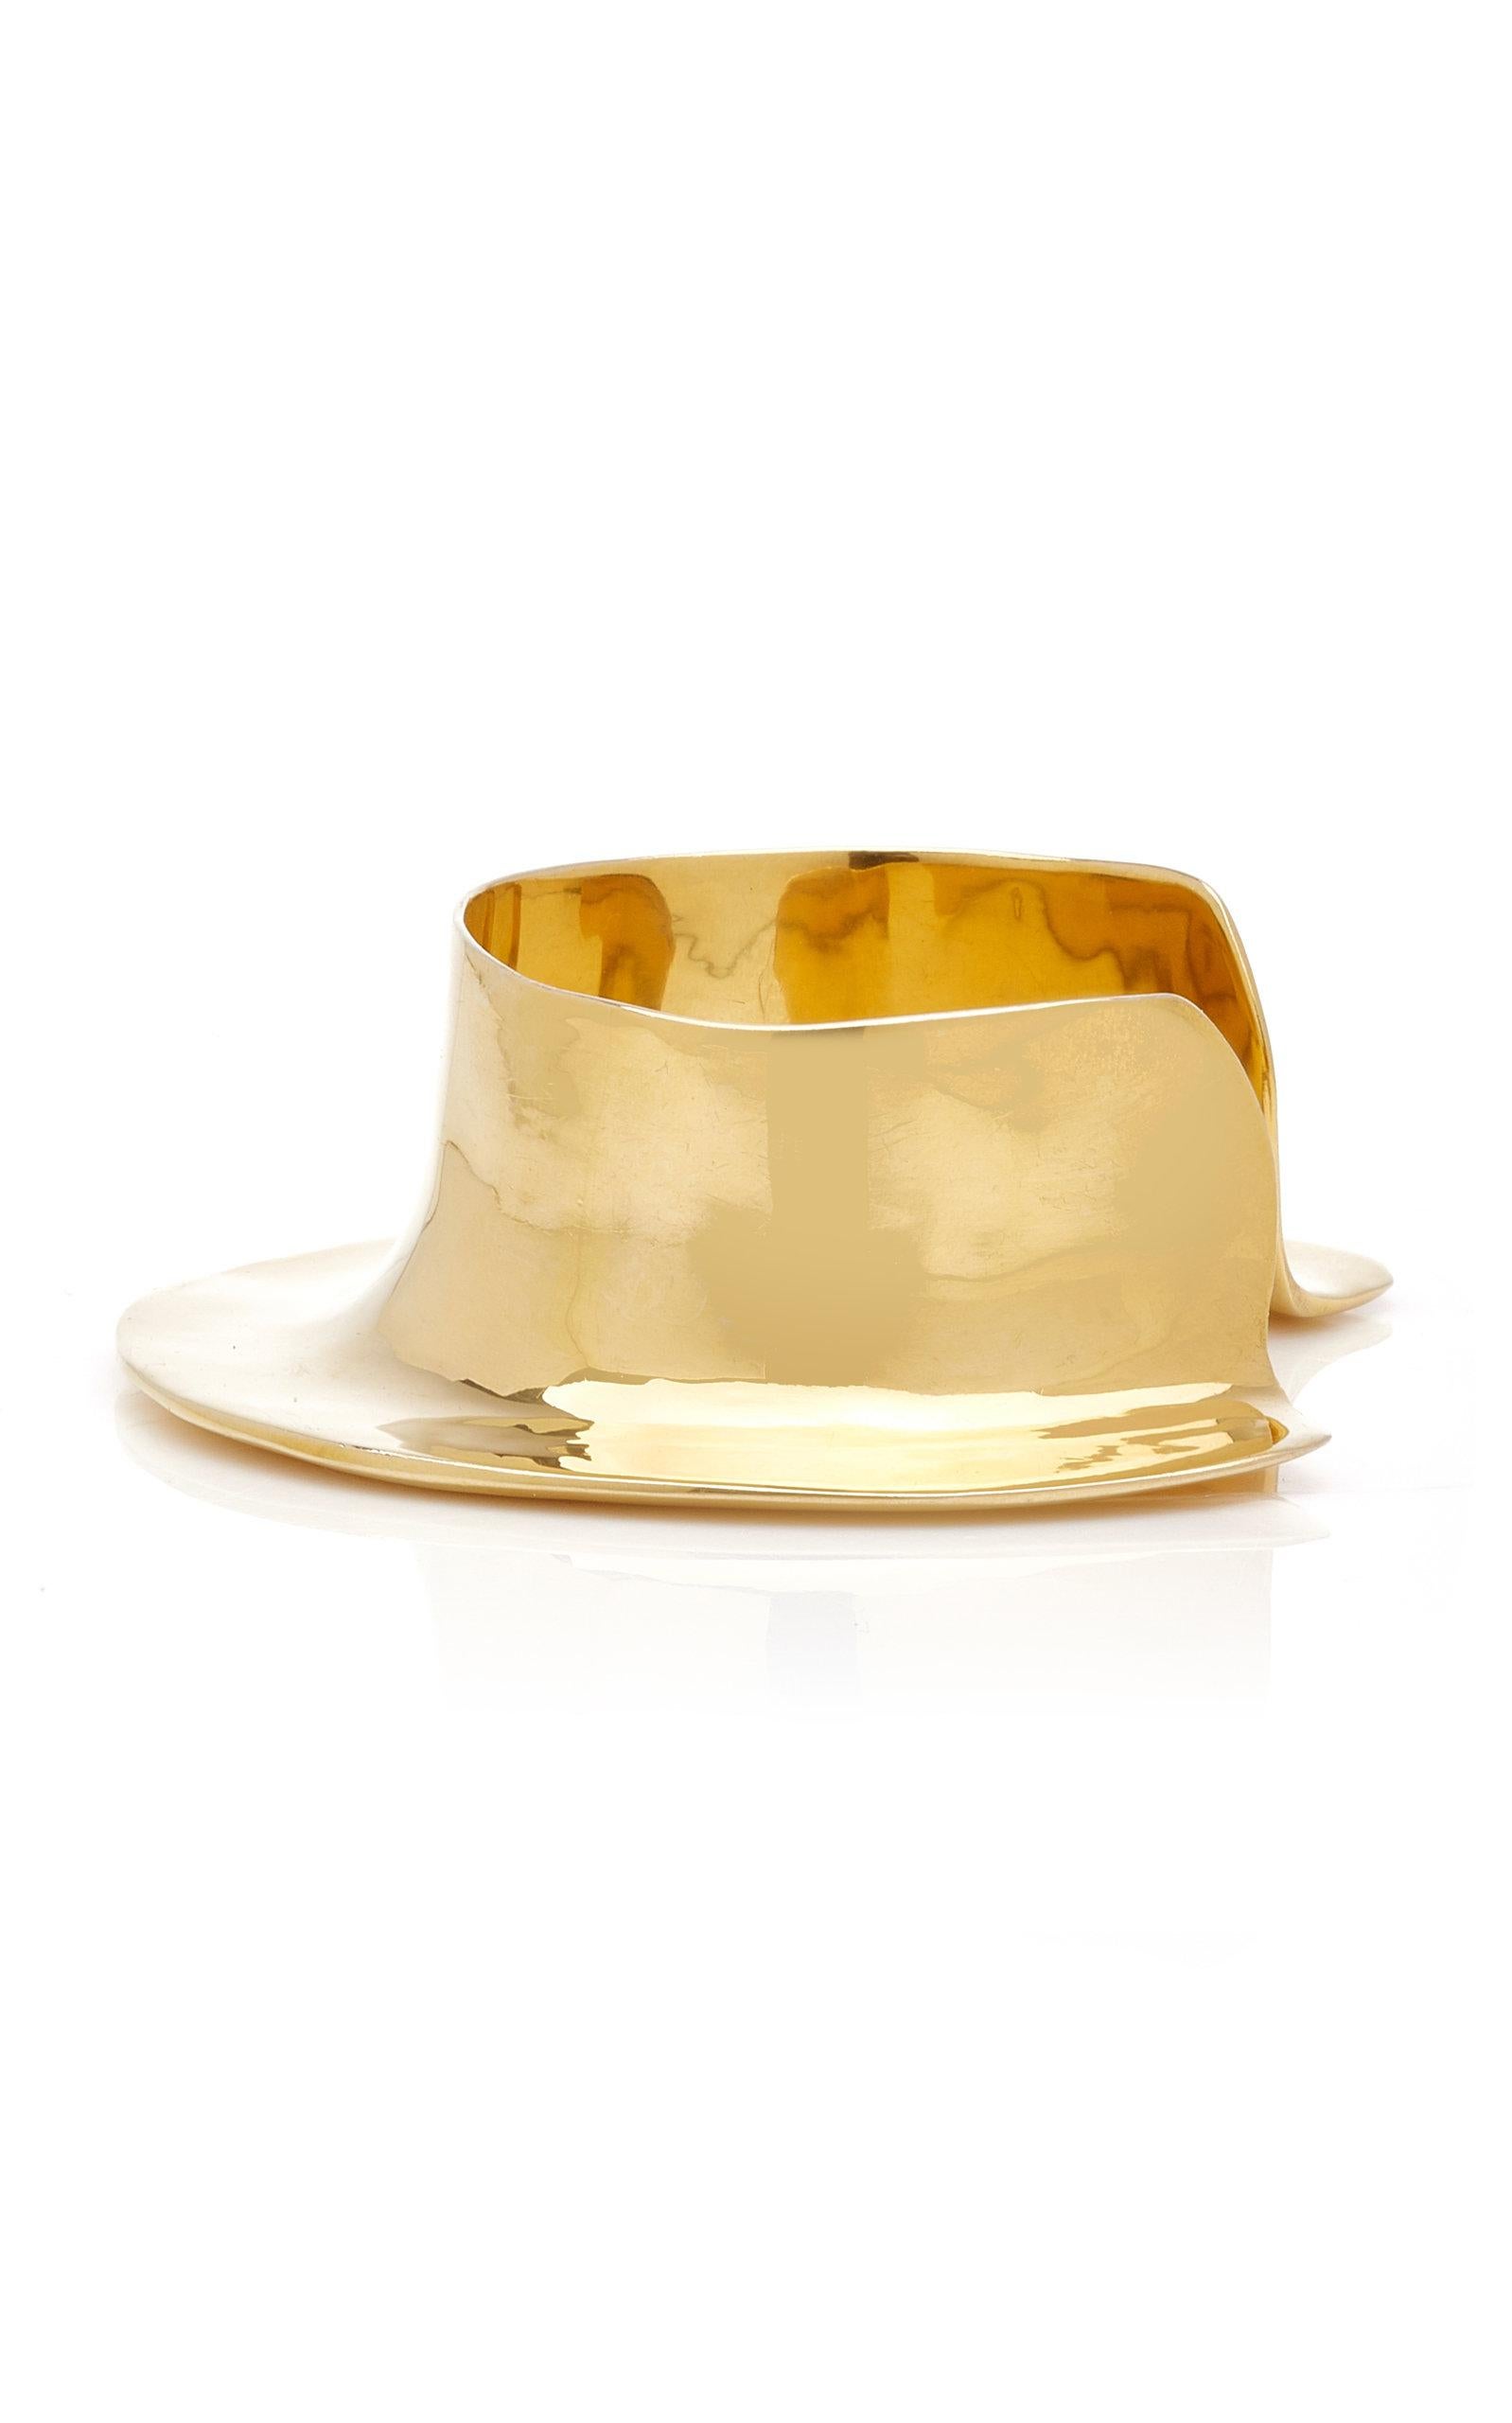 Modernist Ariana Boussard-Reifel Sculptural Gold Bronze Cuff Bracelet For Sale